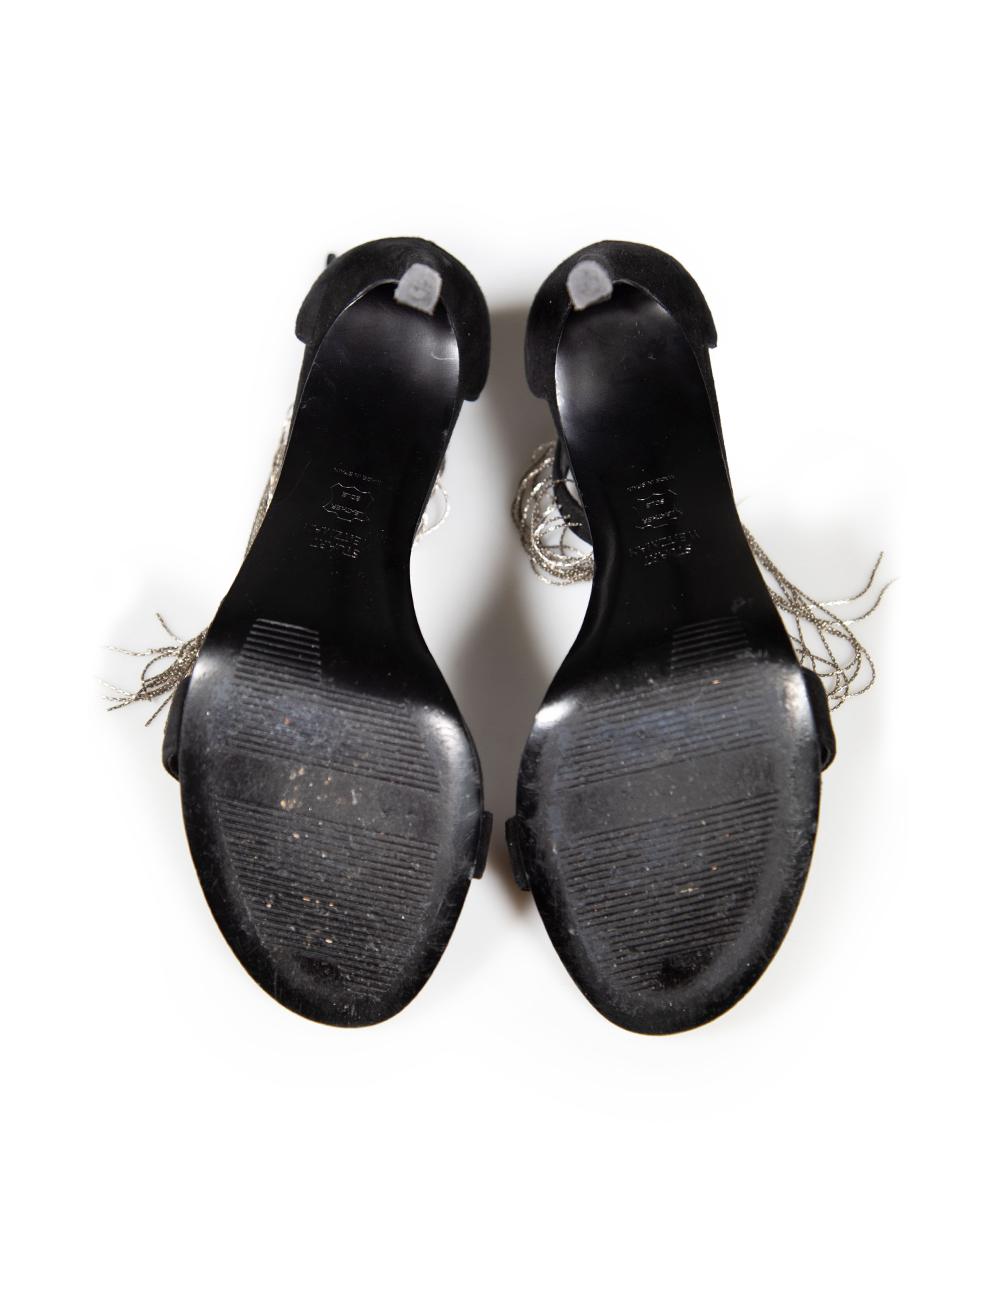 Women's Stuart Weitzman Black Suede Open Toe Tassel Heels Size US 7.5 For Sale